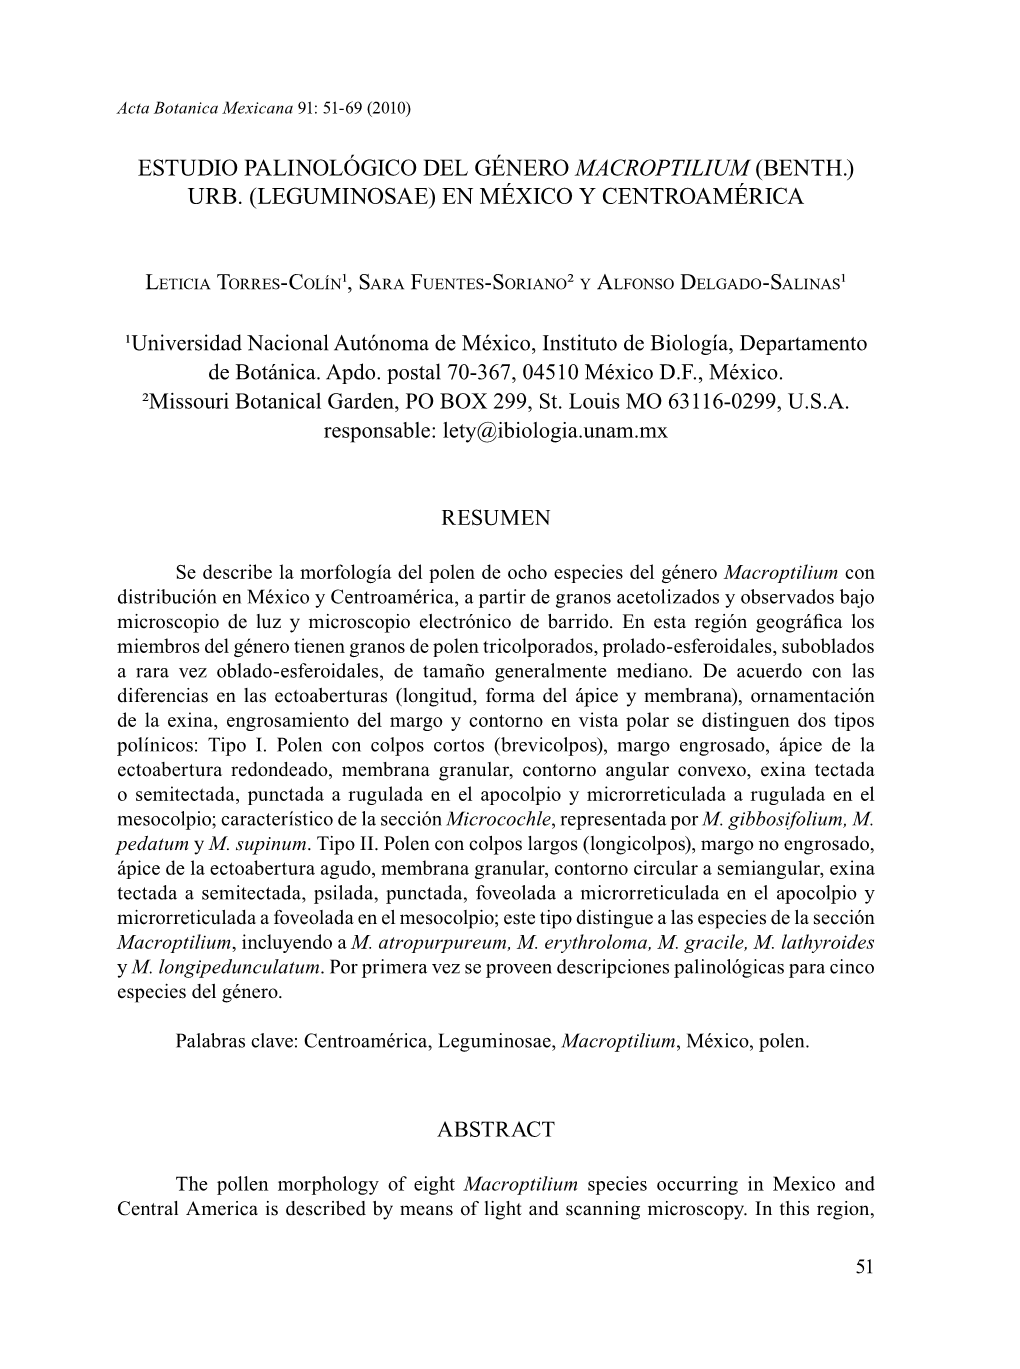 Estudio Palinológico Del Género Macroptilium (Benth.) Urb. (Leguminosae) En México Y Centroamérica